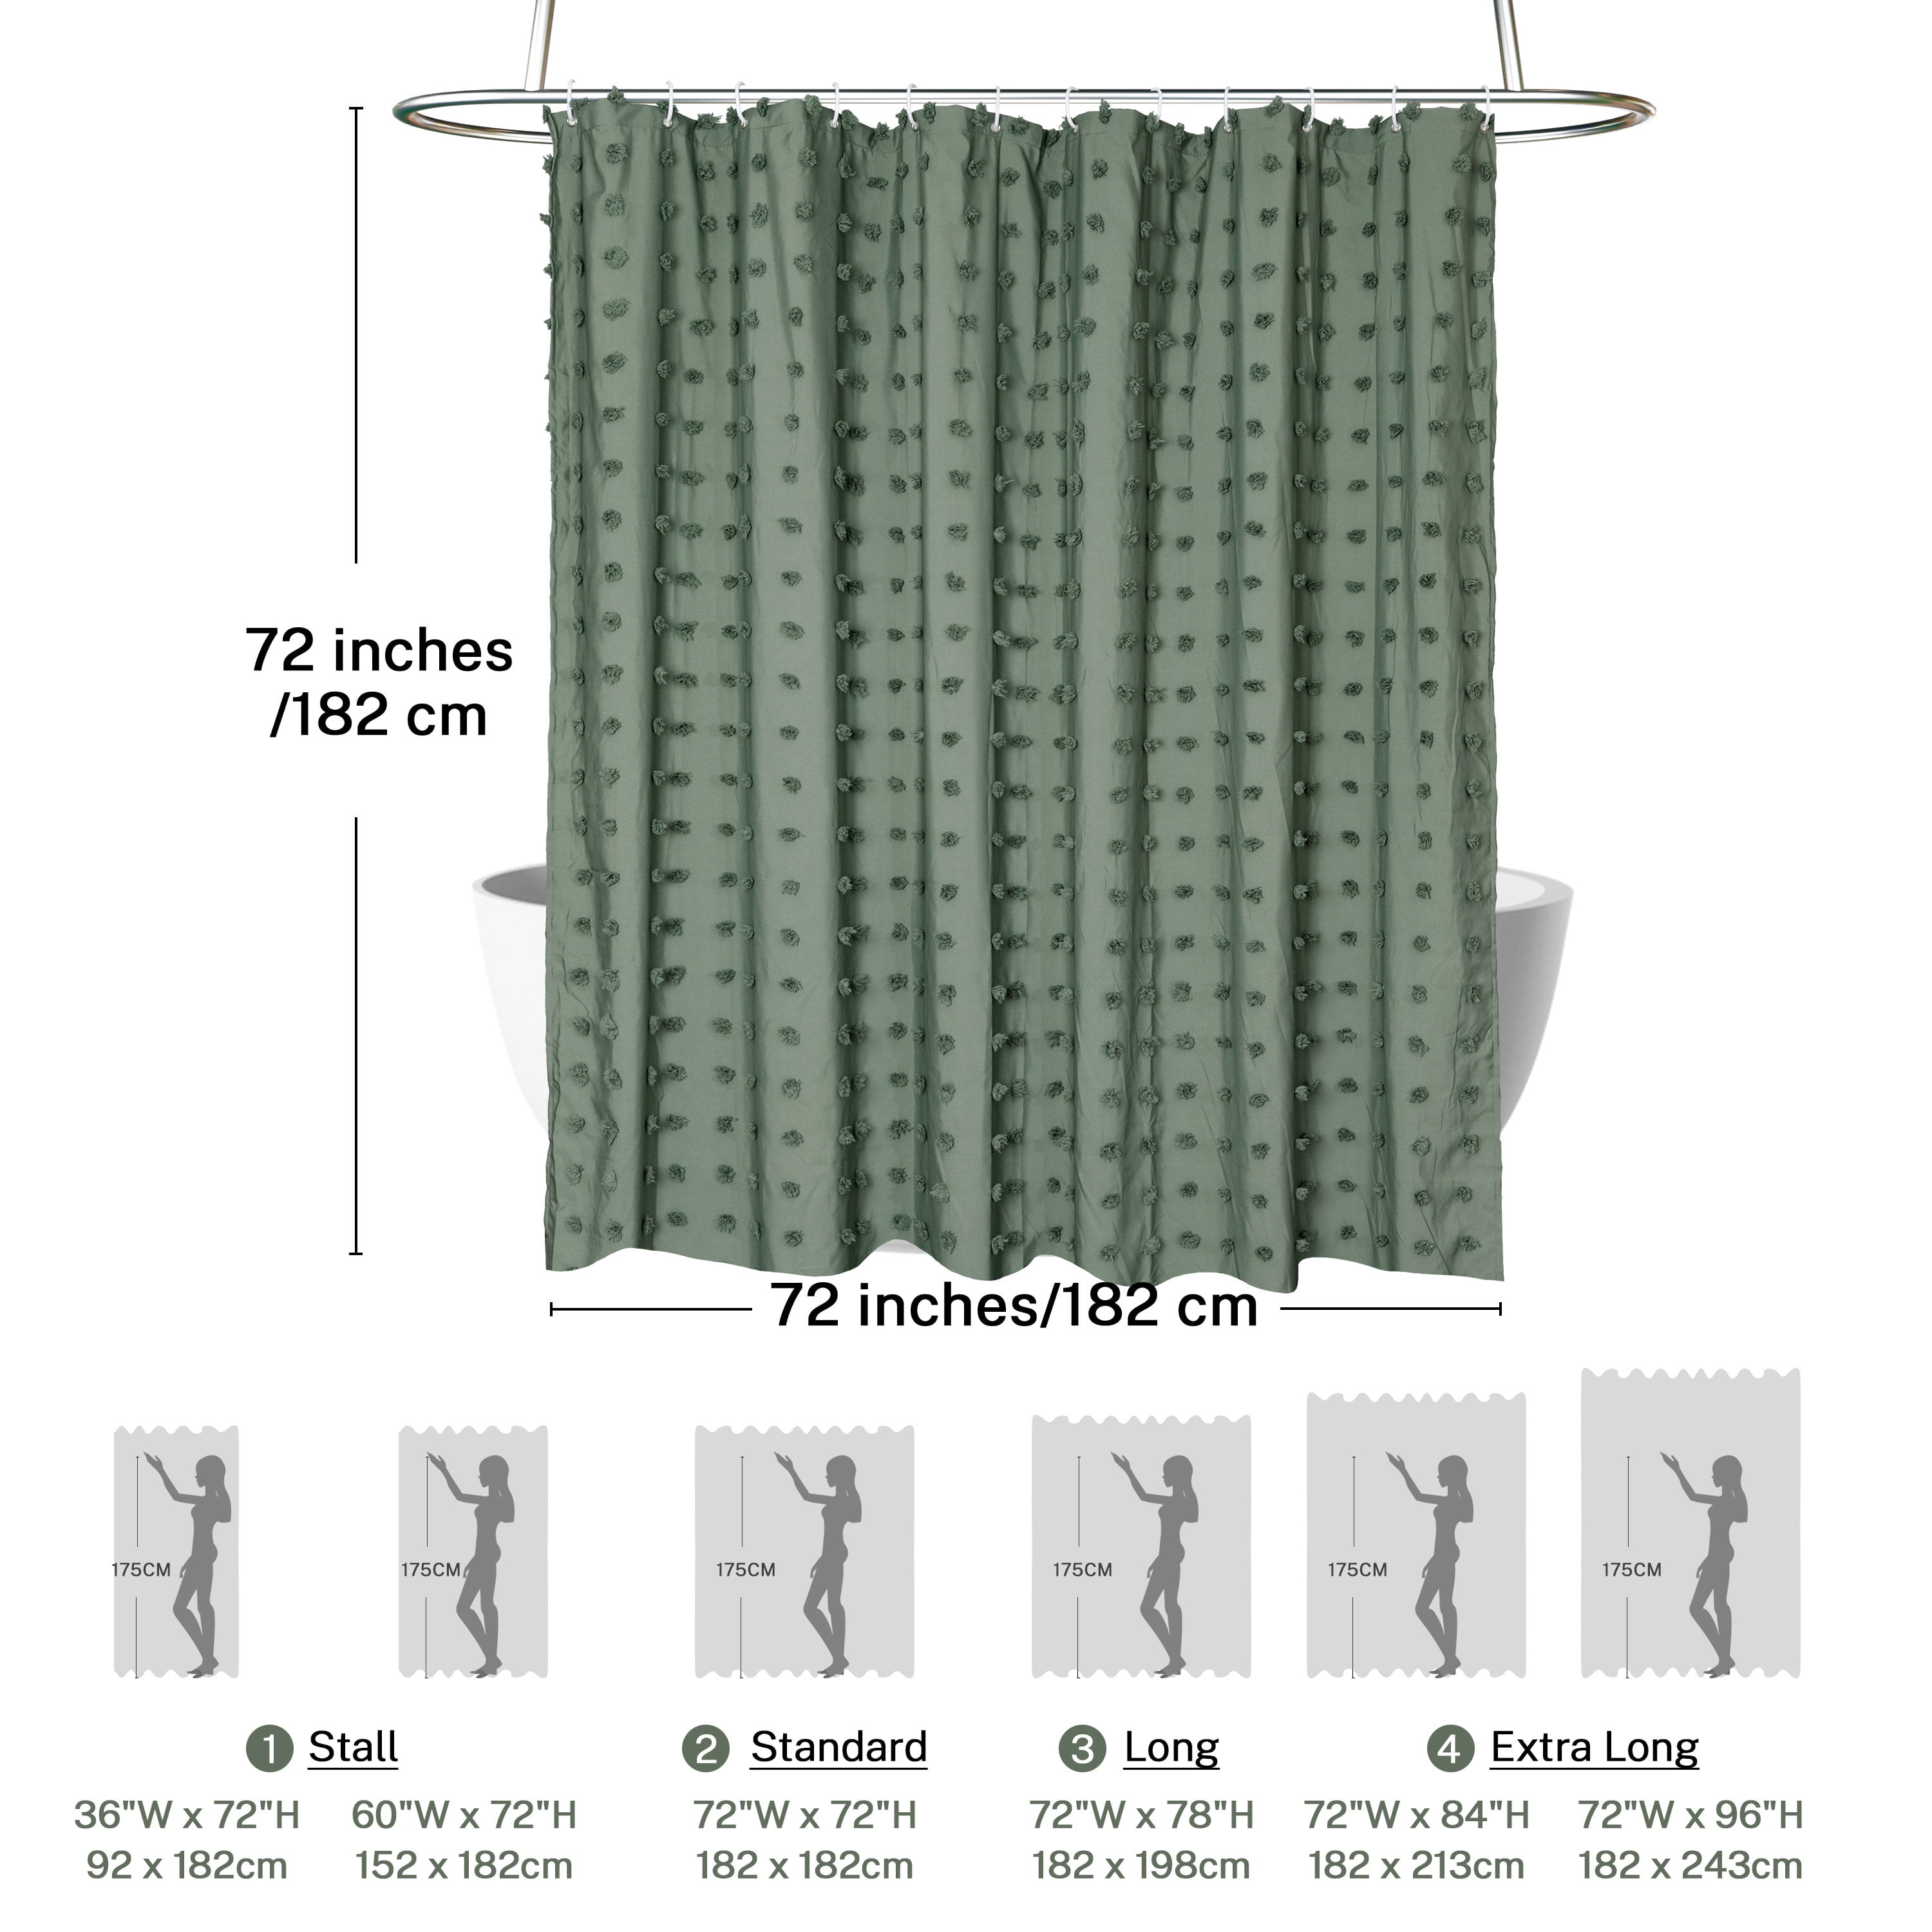 Waffy Essential Shower Curtain